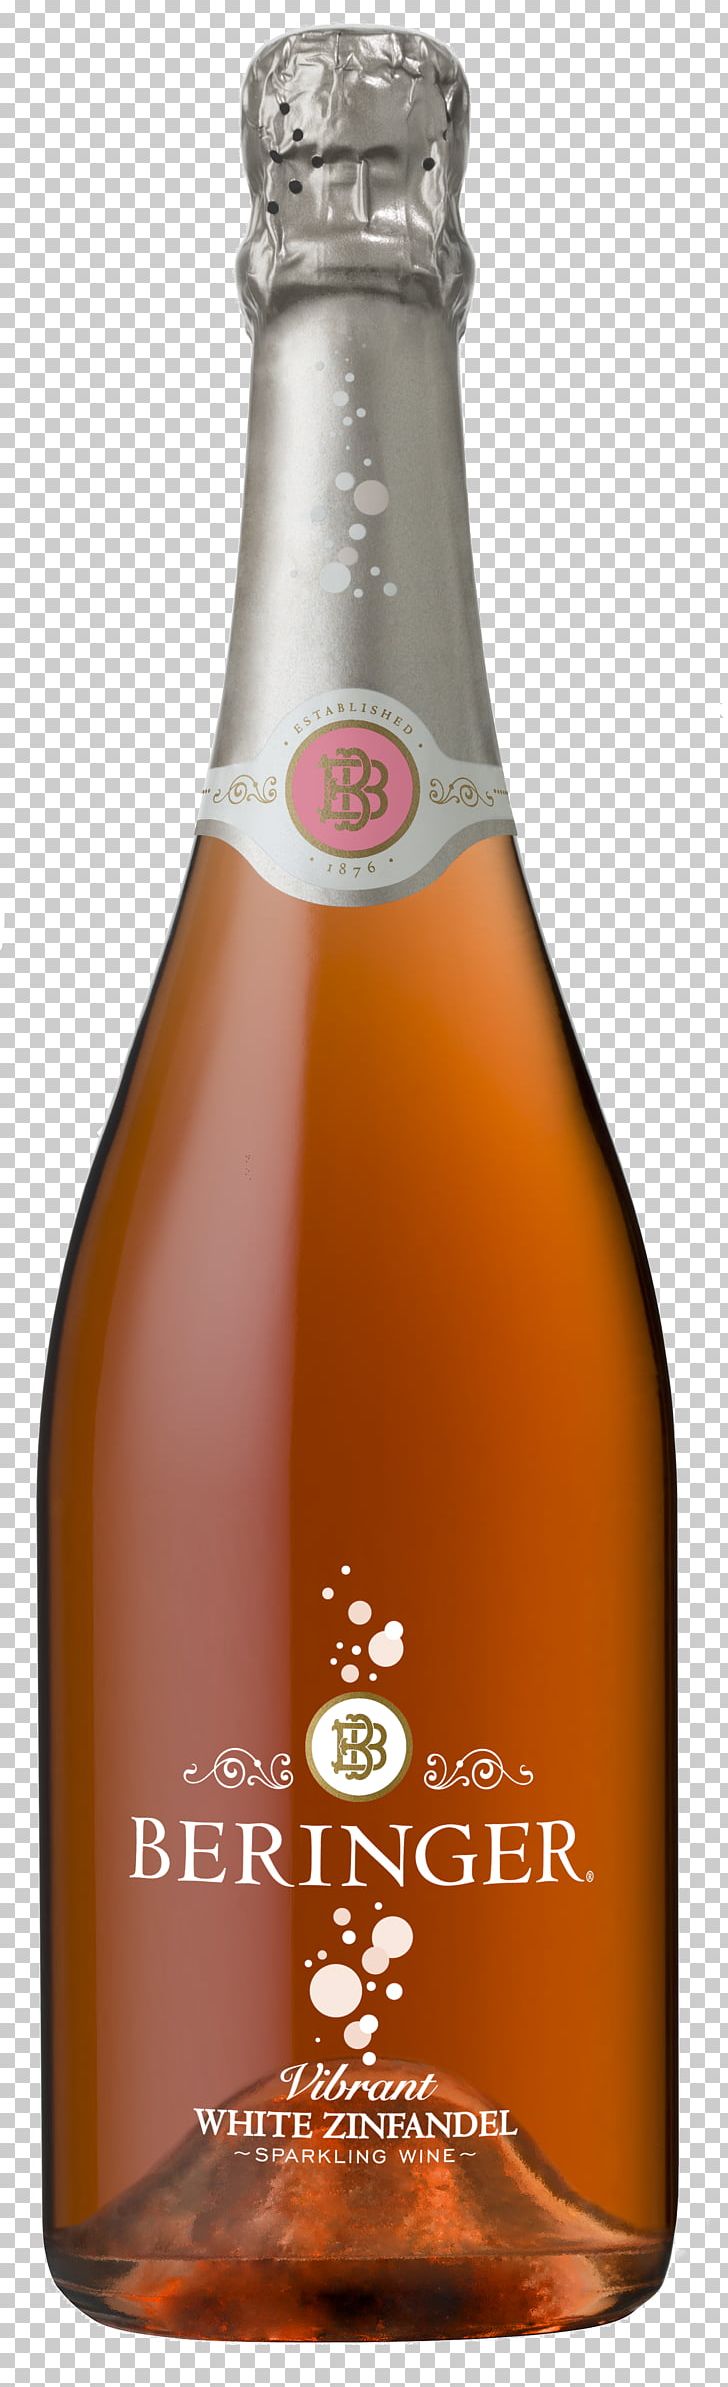 Champagne Beringer Vineyards Sparkling Wine White Zinfandel PNG, Clipart, Alcoholic Beverage, Beer Bottle, Bogle Vineyards, Bottle, Cabernet Sauvignon Free PNG Download